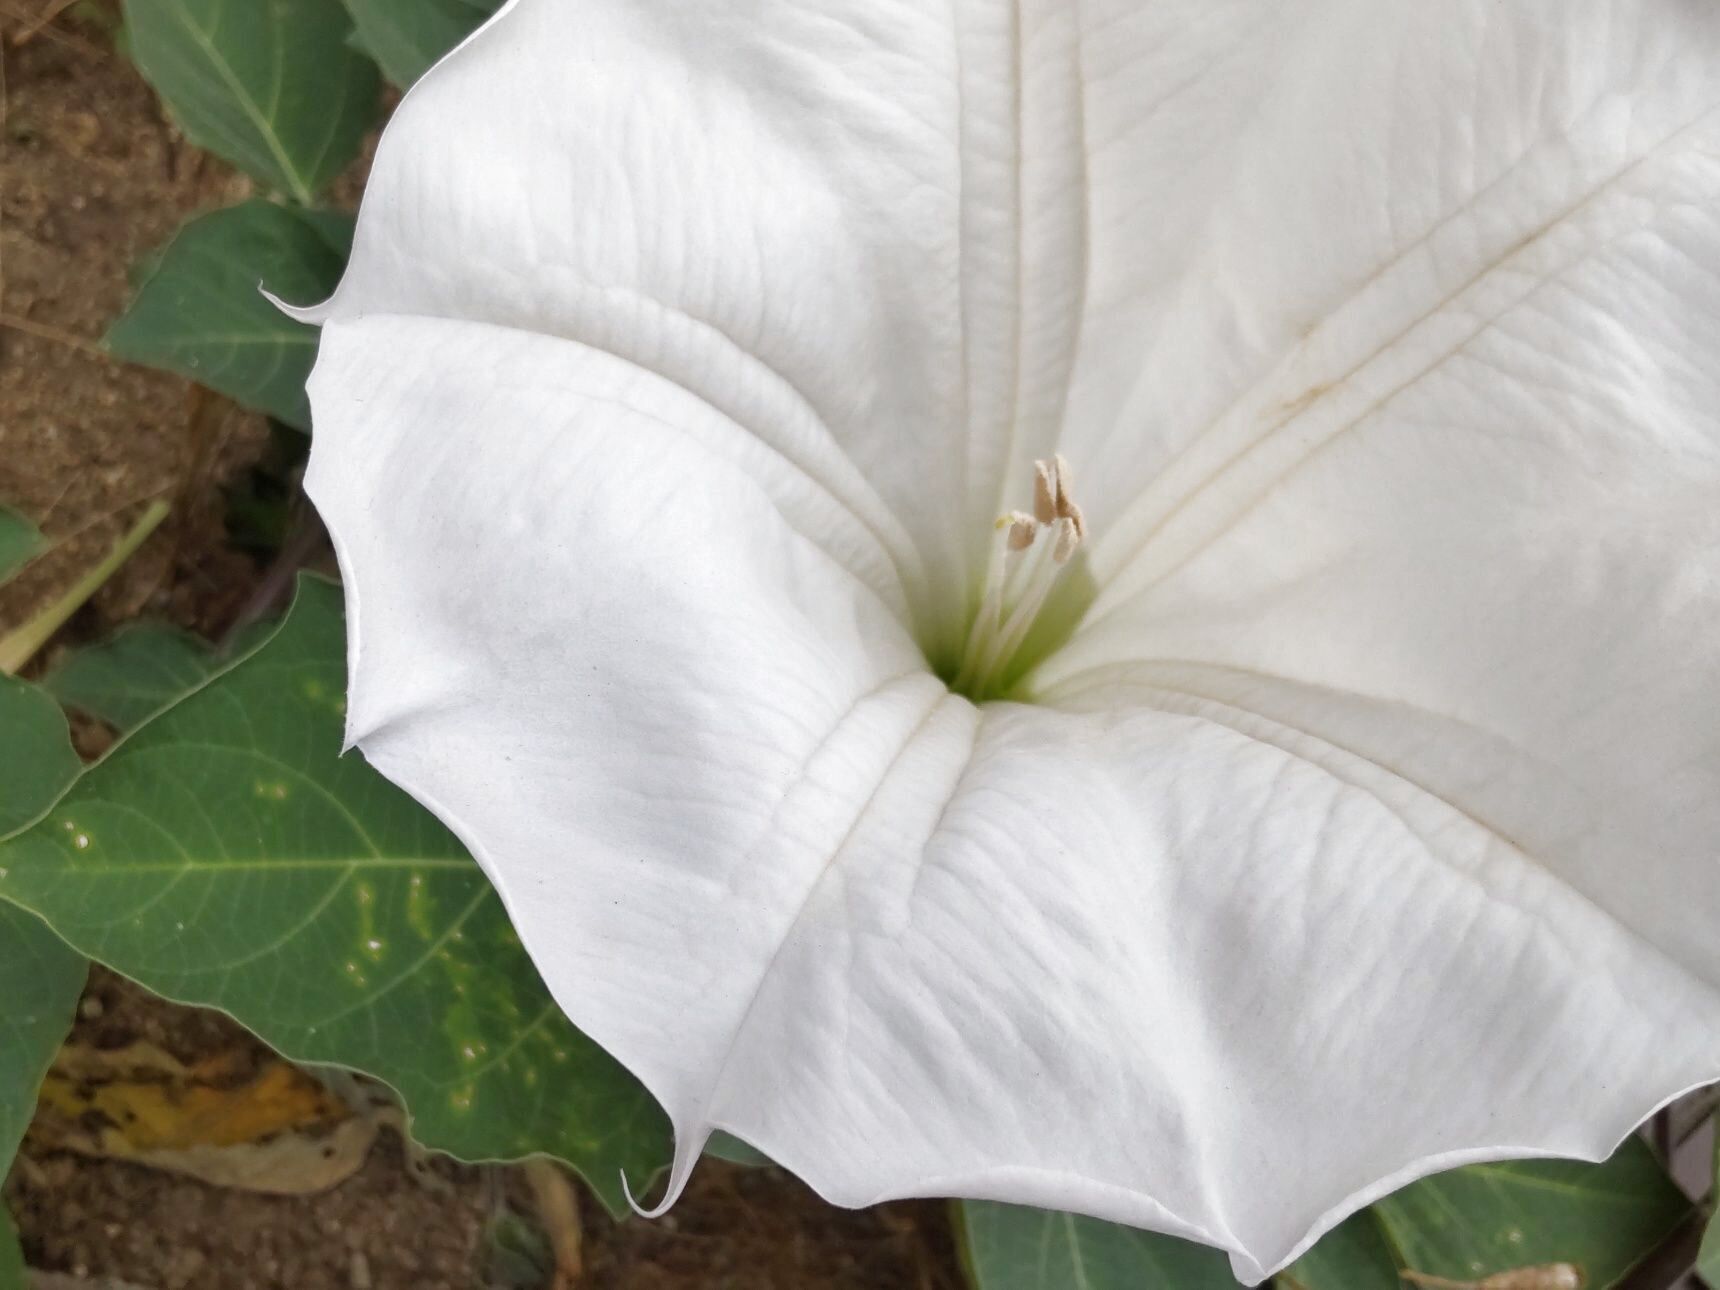 鑑賞の花としては美しい「白鳥」のようでもあり、白い服の美女のようでもあり…だけど見るだけにしたいお花ですよ